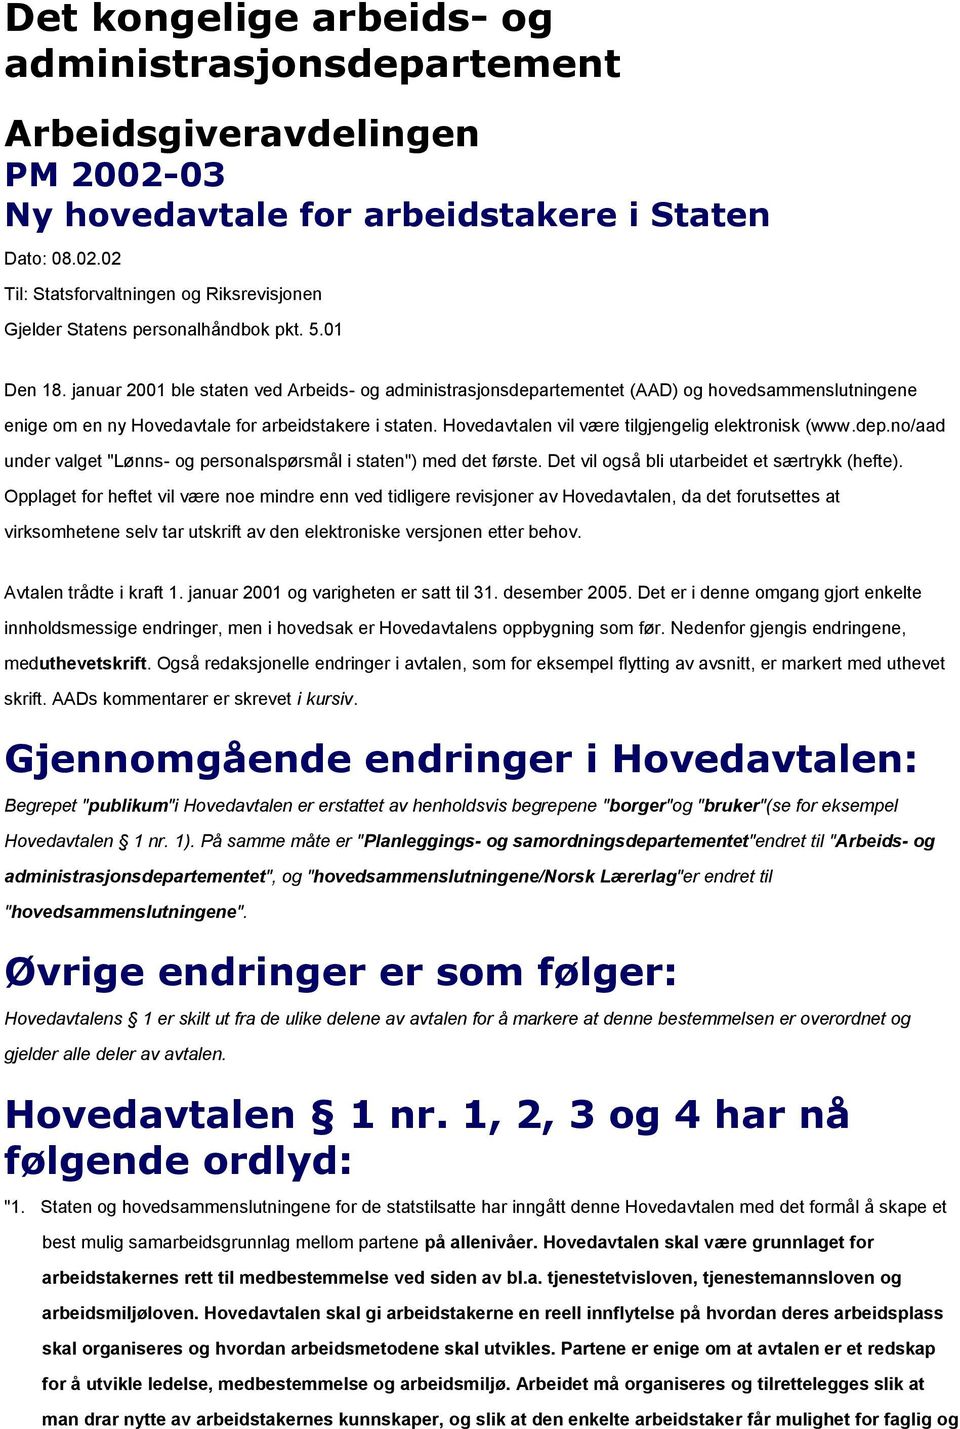 Hovedavtalen vil være tilgjengelig elektronisk (www.dep.no/aad under valget "Lønns- og personalspørsmål i staten") med det første. Det vil også bli utarbeidet et særtrykk (hefte).